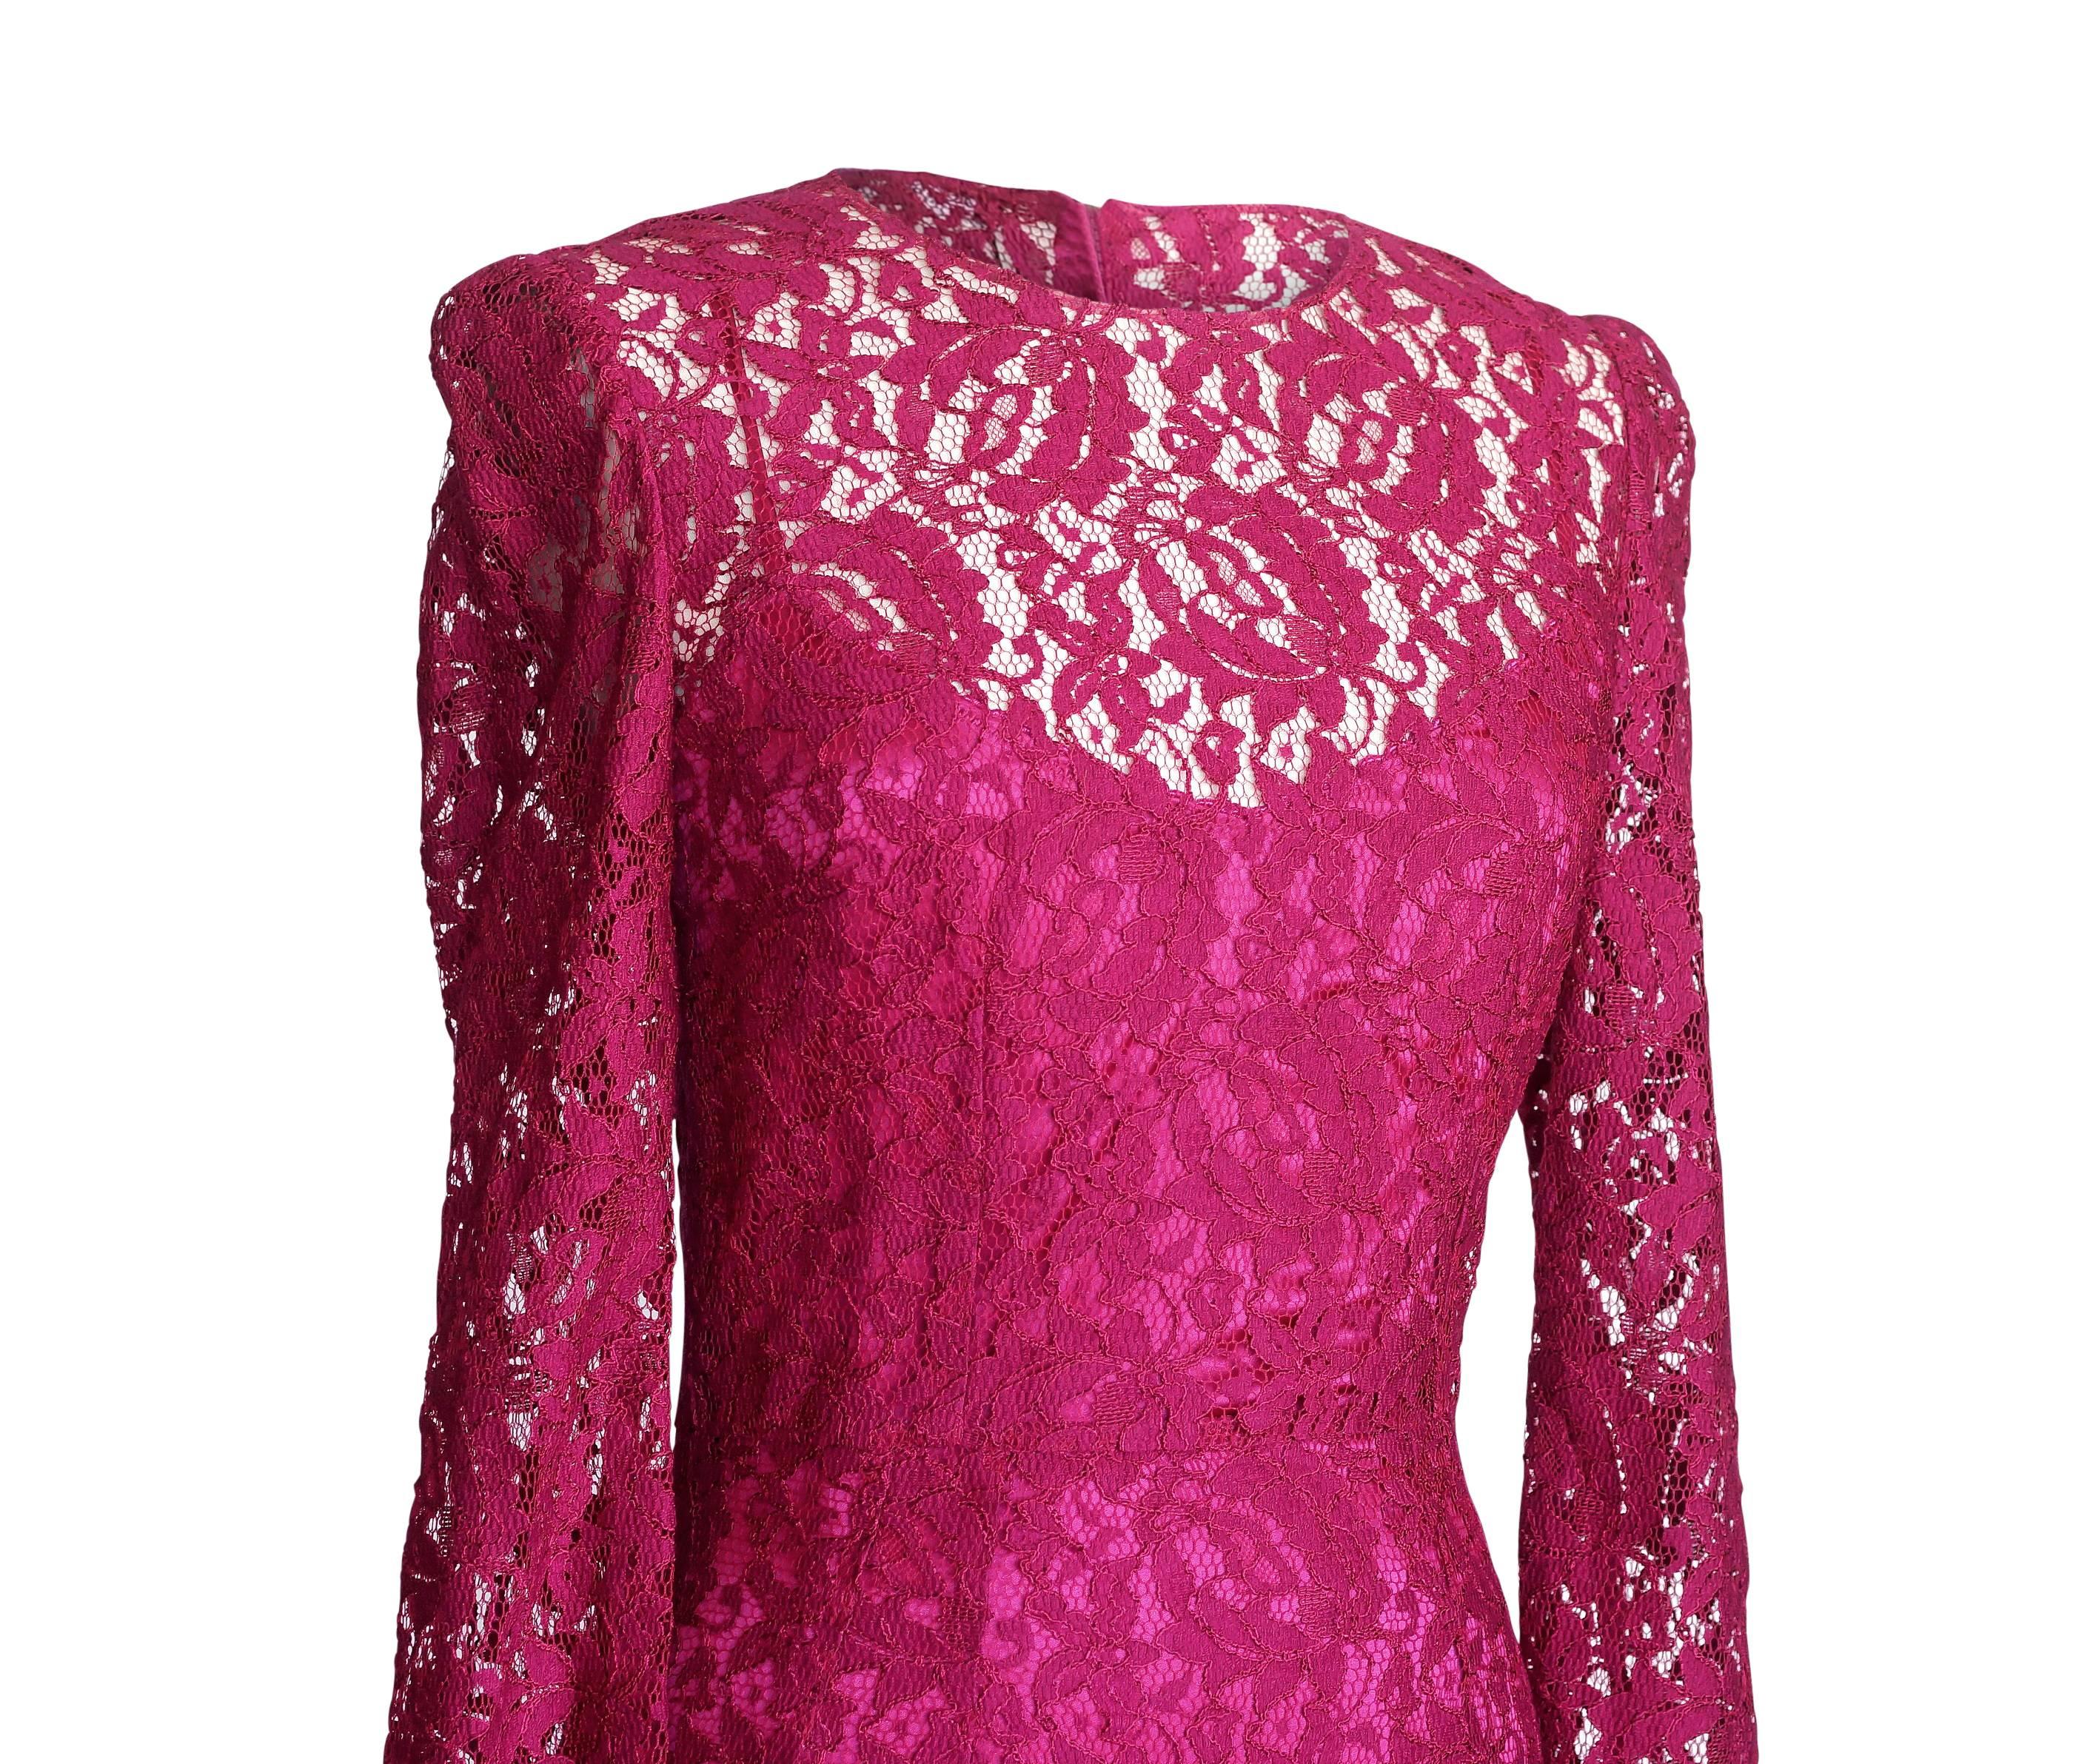 Klassisches Dolce&Gabbana Kleid aus himbeerroter Spitze in Juwelentönen.  
Wunderschön geschnittenes, langärmeliges Kleid aus reicher Spitze.
Verdeckter Reißverschluss hinten.
Wird mit einem separaten himbeerfarbenen Seidenslip geliefert.
Der Stoff